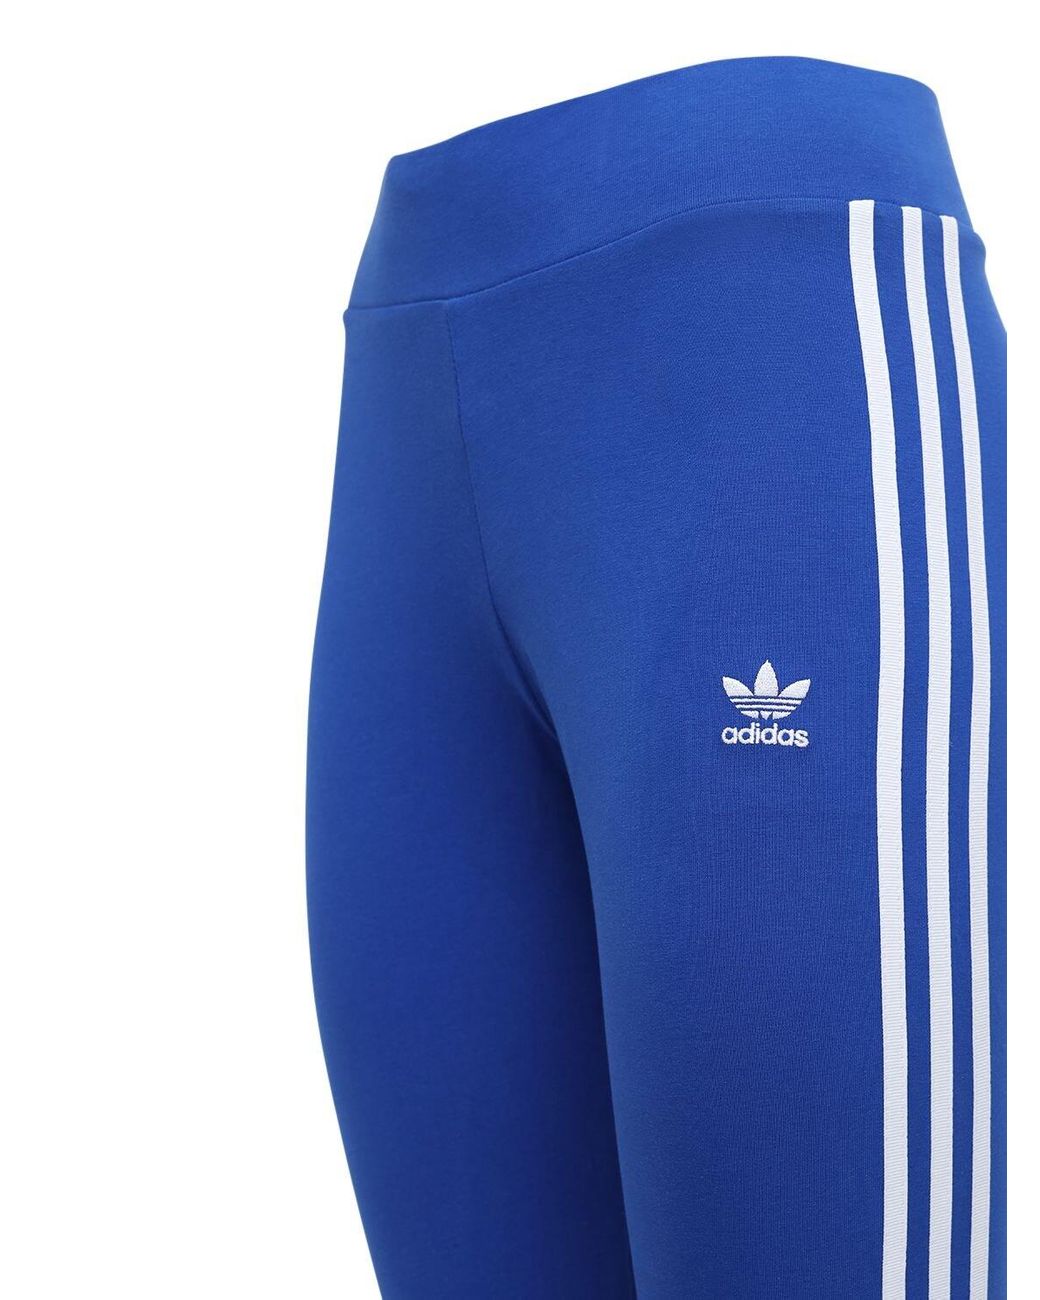 adidas Originals 3 Stripes Tight Cotton leggings in Blue | Lyst